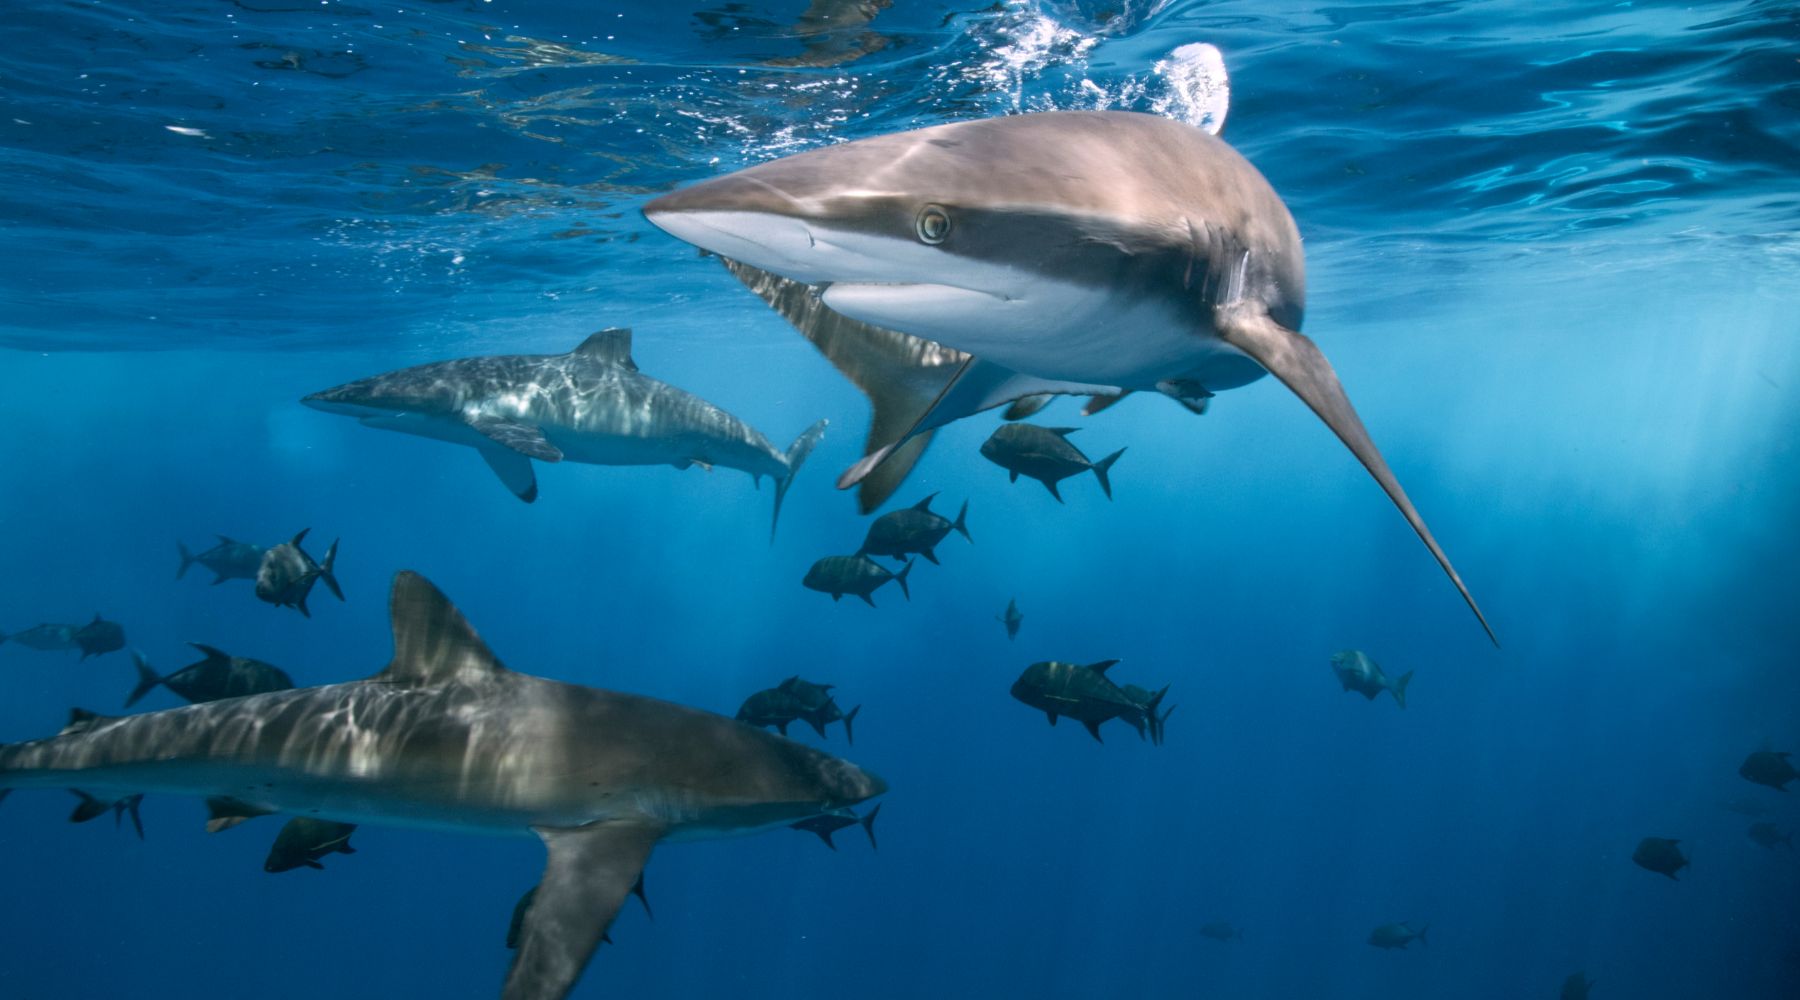 Are sharks endangered? Sharks swimming in ocean